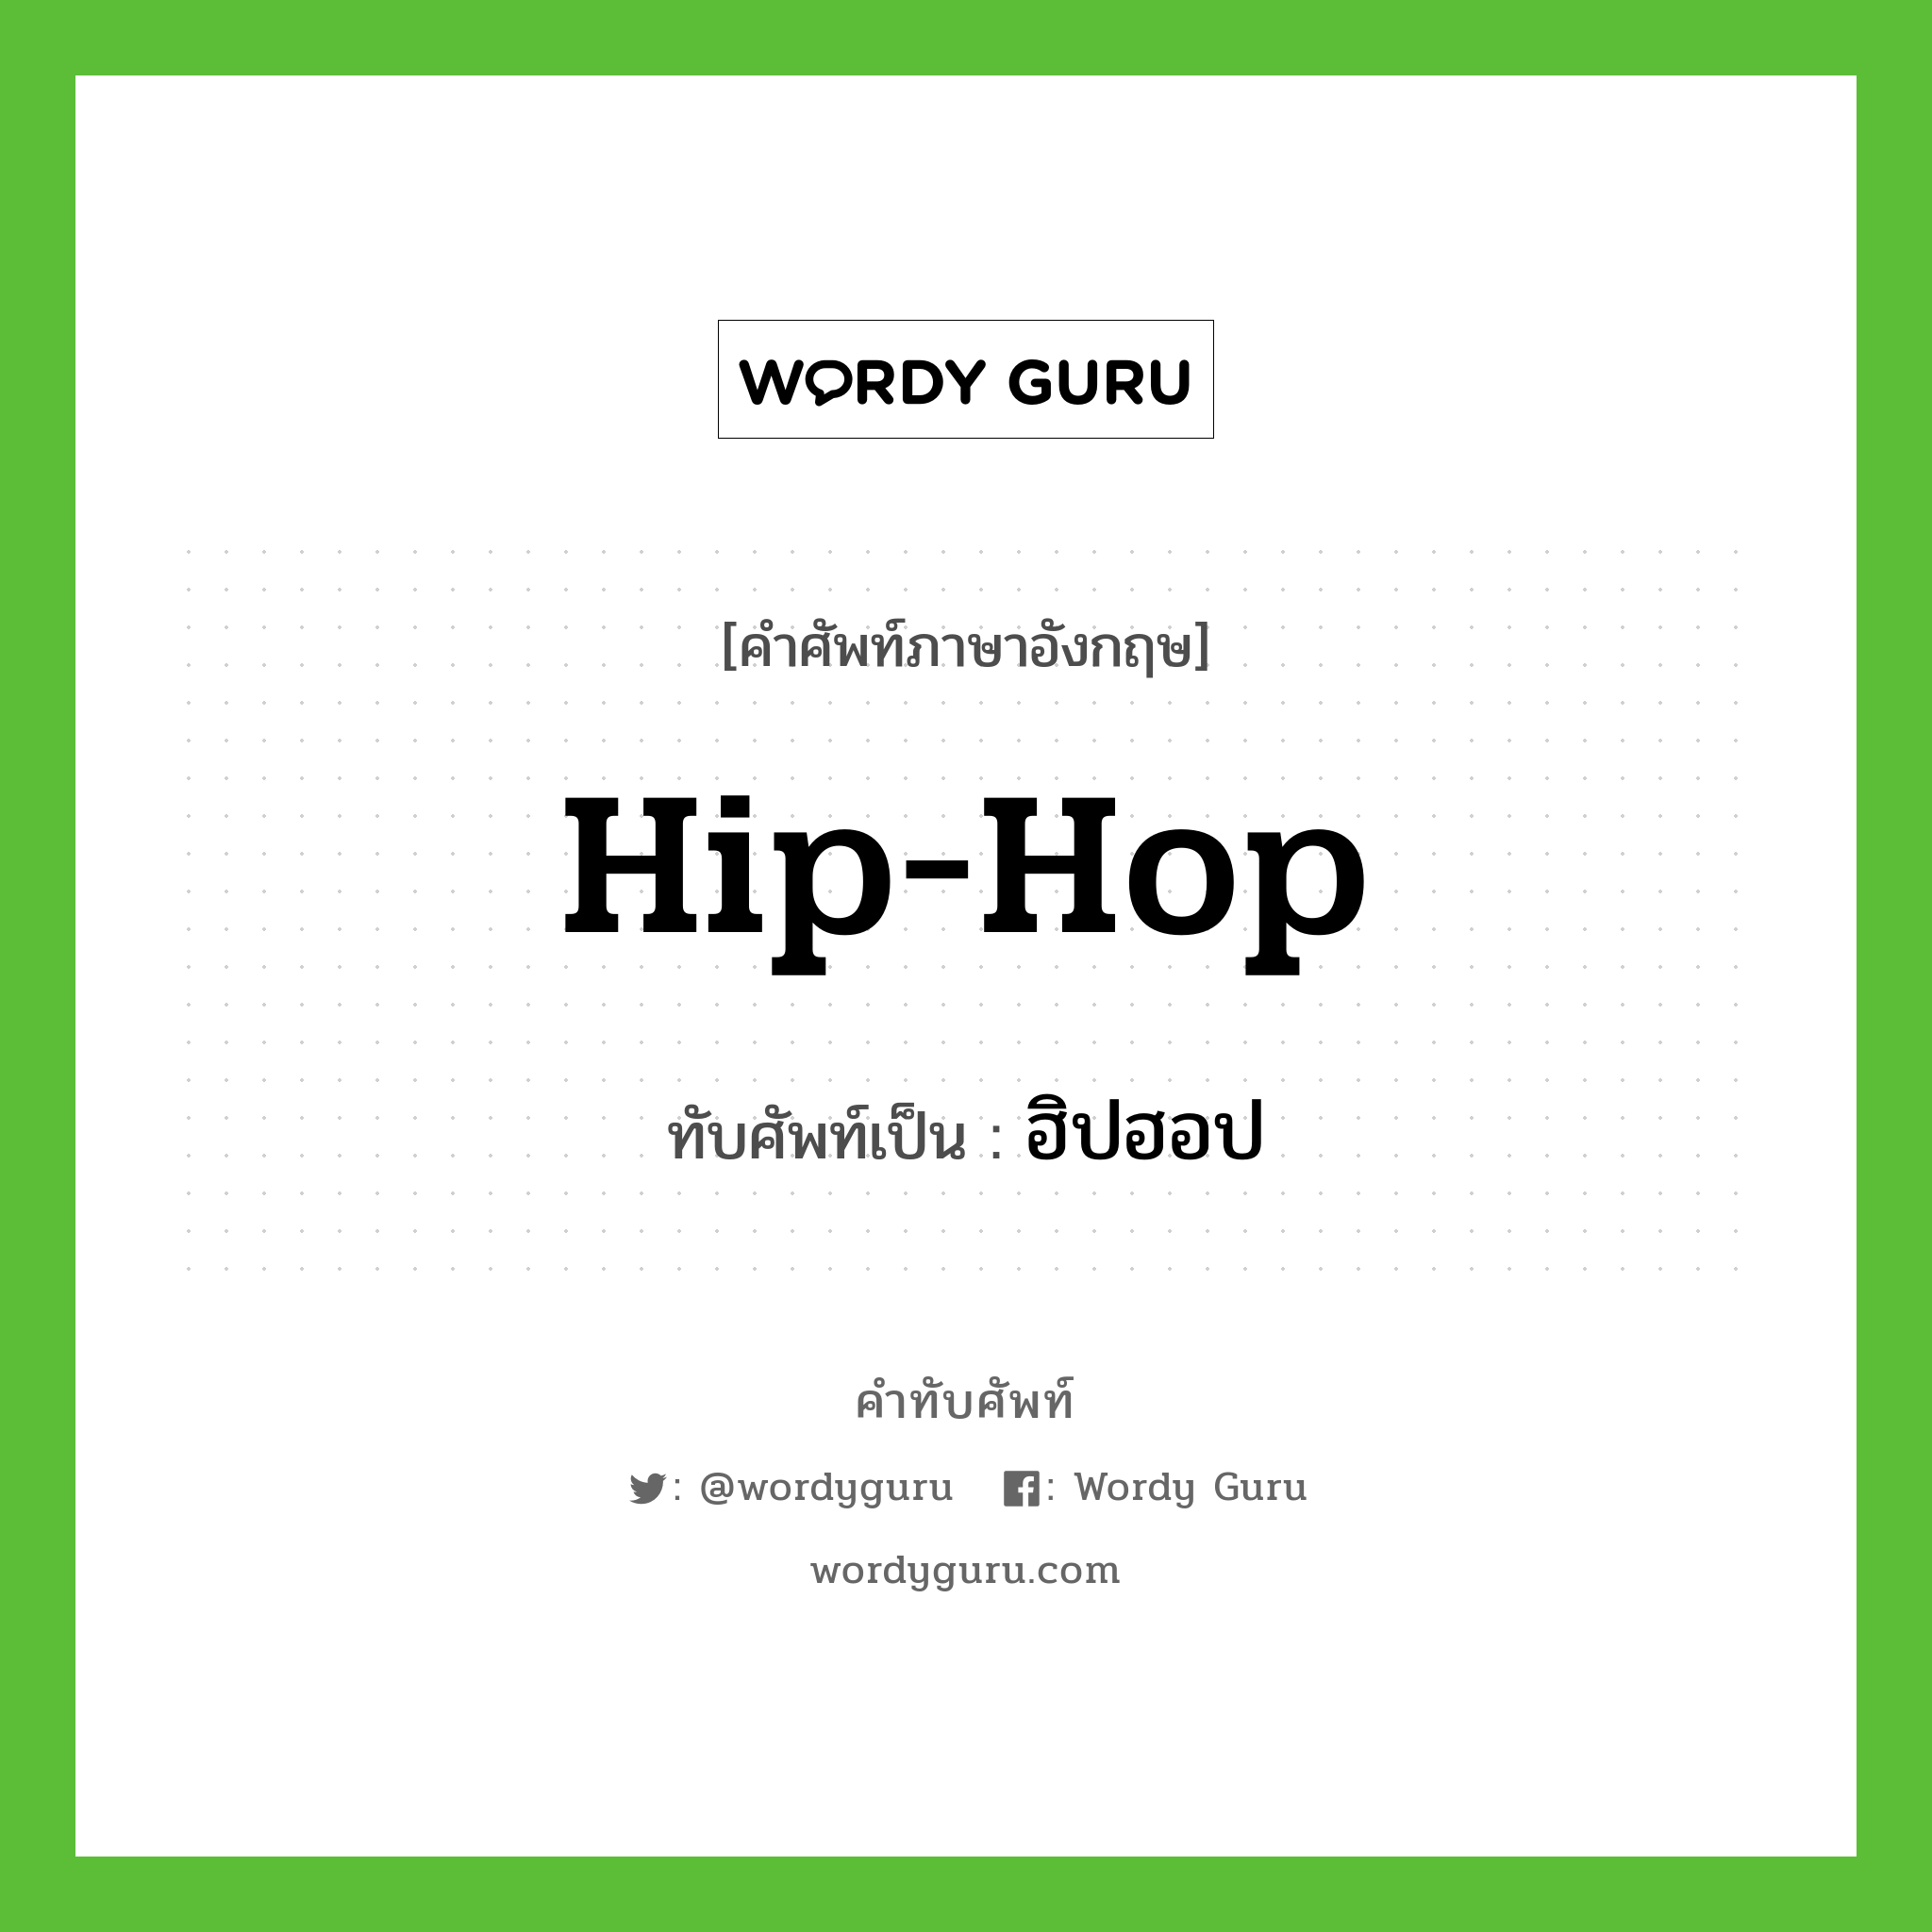 Hip-Hop เขียนเป็นคำไทยว่าอะไร?, คำศัพท์ภาษาอังกฤษ Hip-Hop ทับศัพท์เป็น ฮิปฮอป